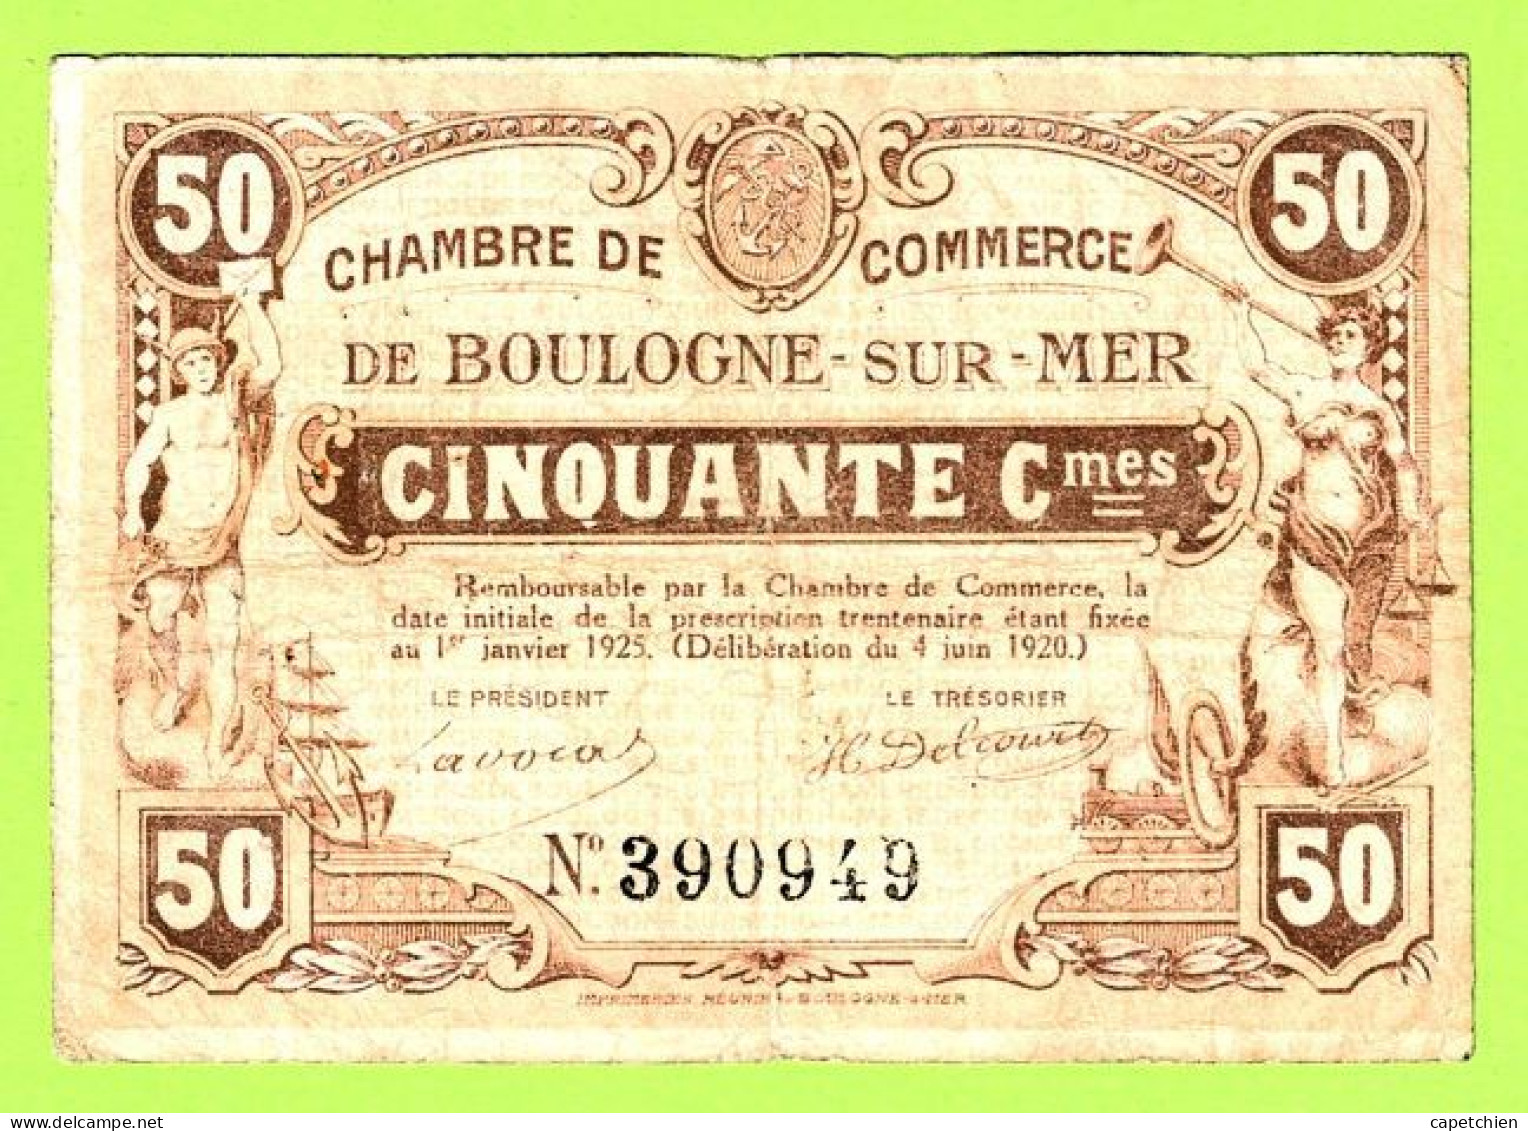 FRANCE / CHAMBRE De COMMERCE : BOULOGNE SUR MER / 50 CENTIMES / 4 UIN 1920  / N° 390949 - Chambre De Commerce